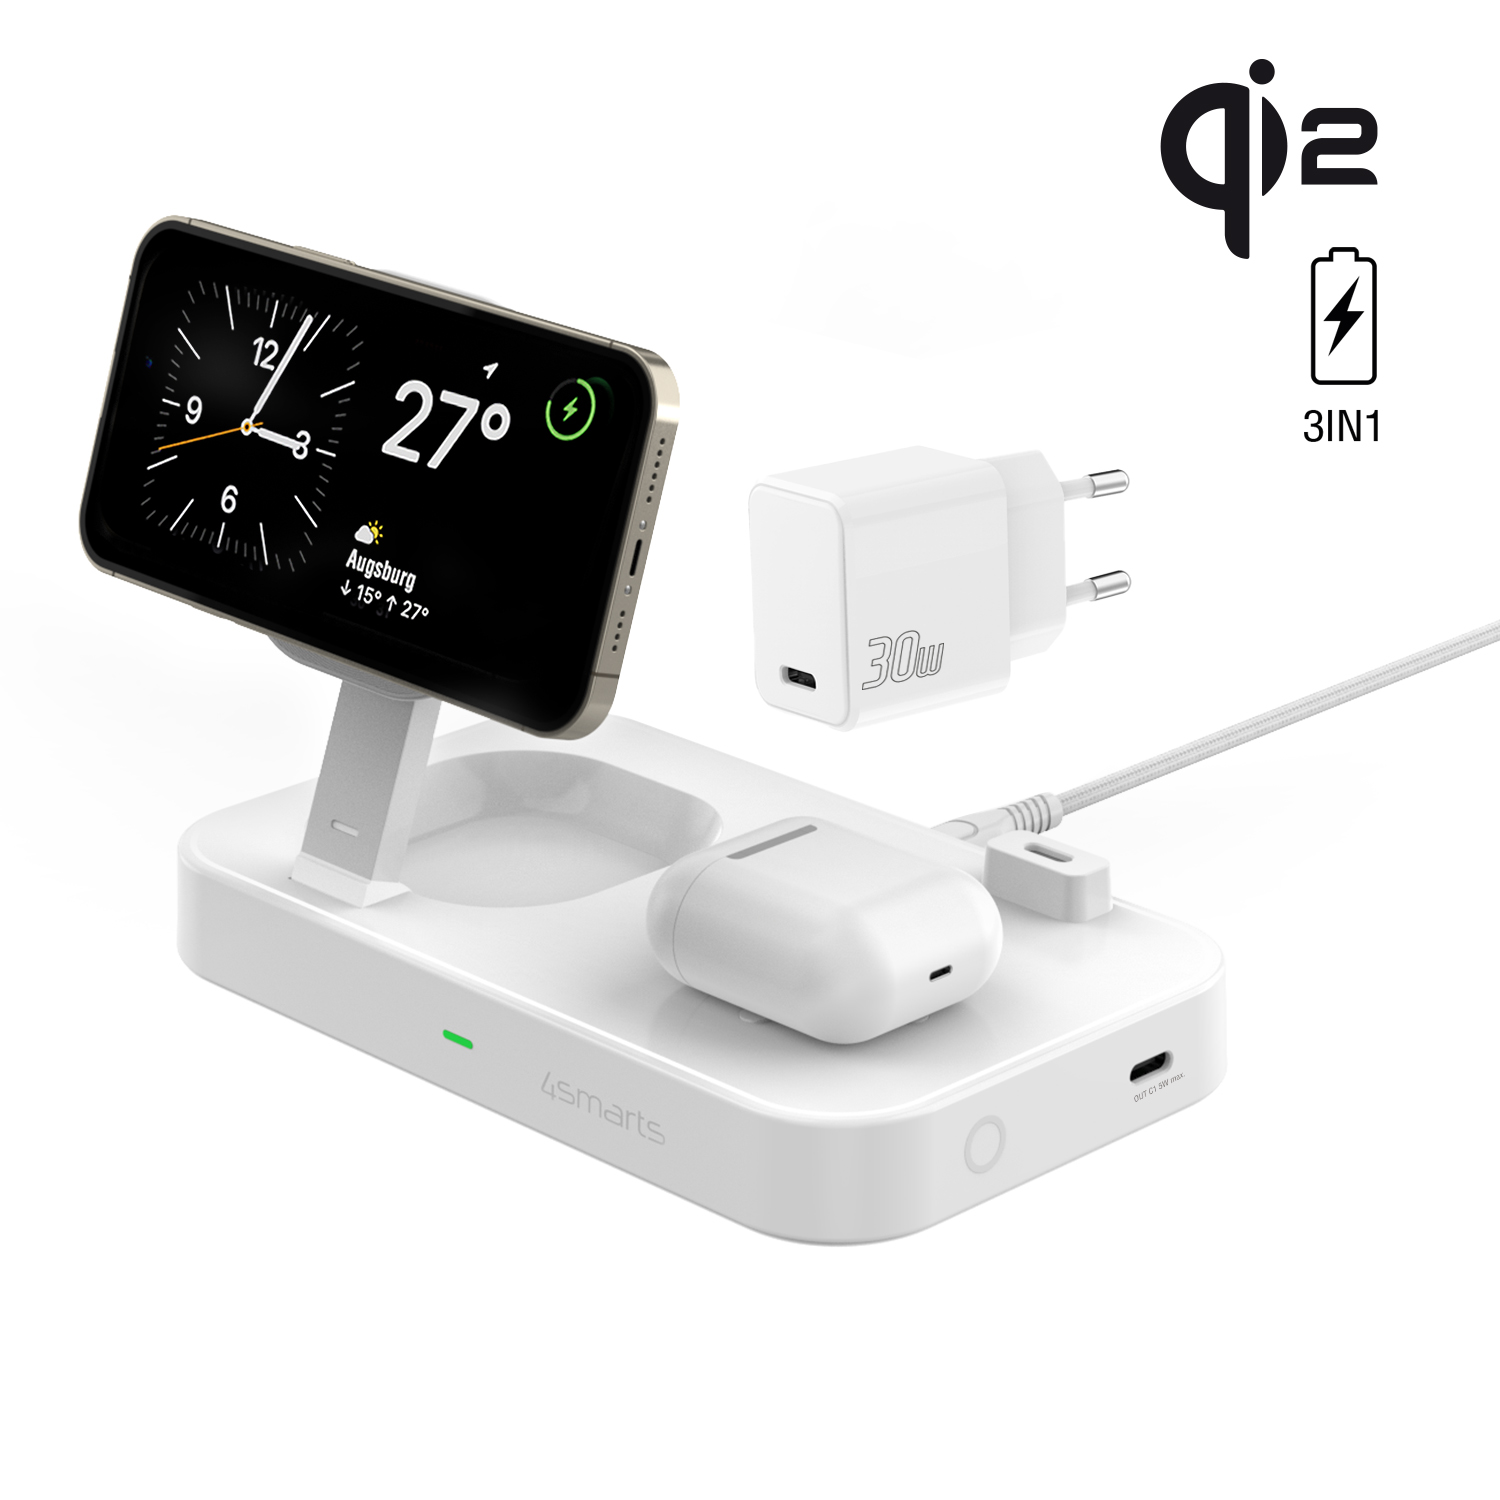 Die 3 in 1 4smarts Qi2 Trident Ladestation ist der perfekte Begleiter für dein iPhone, deine Apple Watch und dein TWS Headset. 